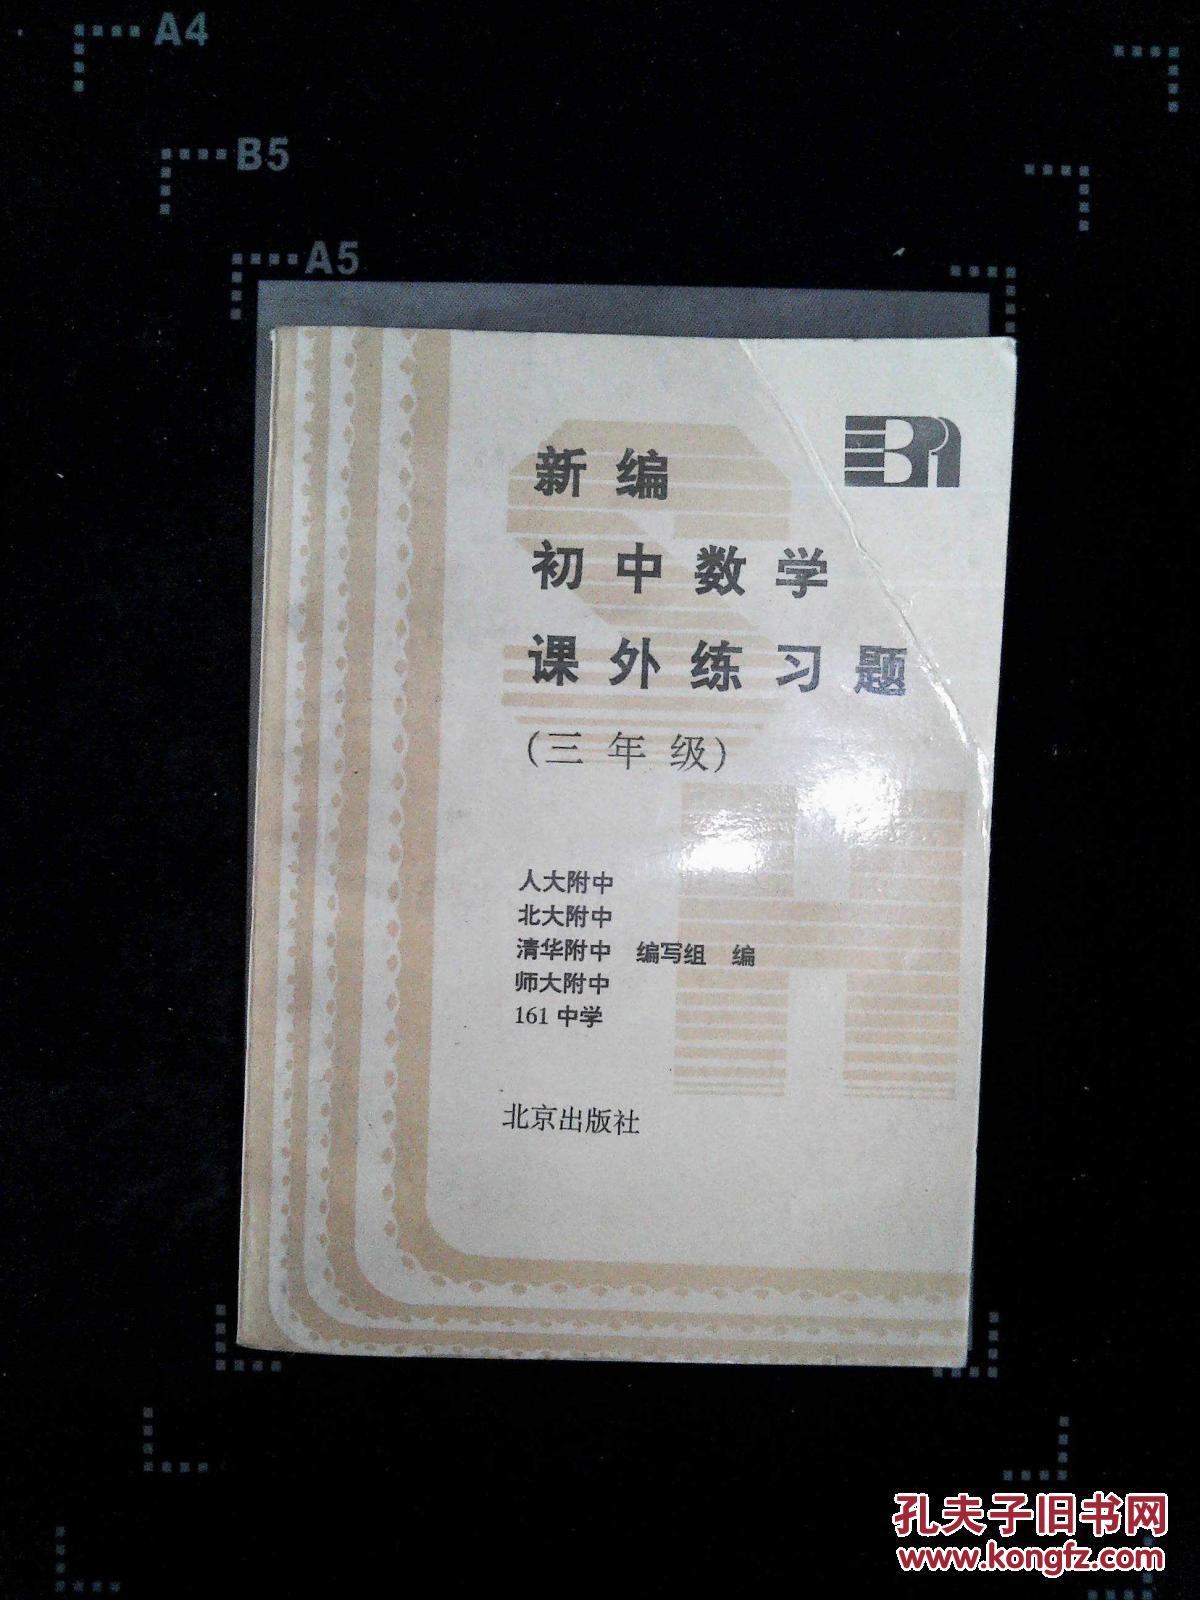 【图】新编 初中数学 课外练习题(三年级)_北京